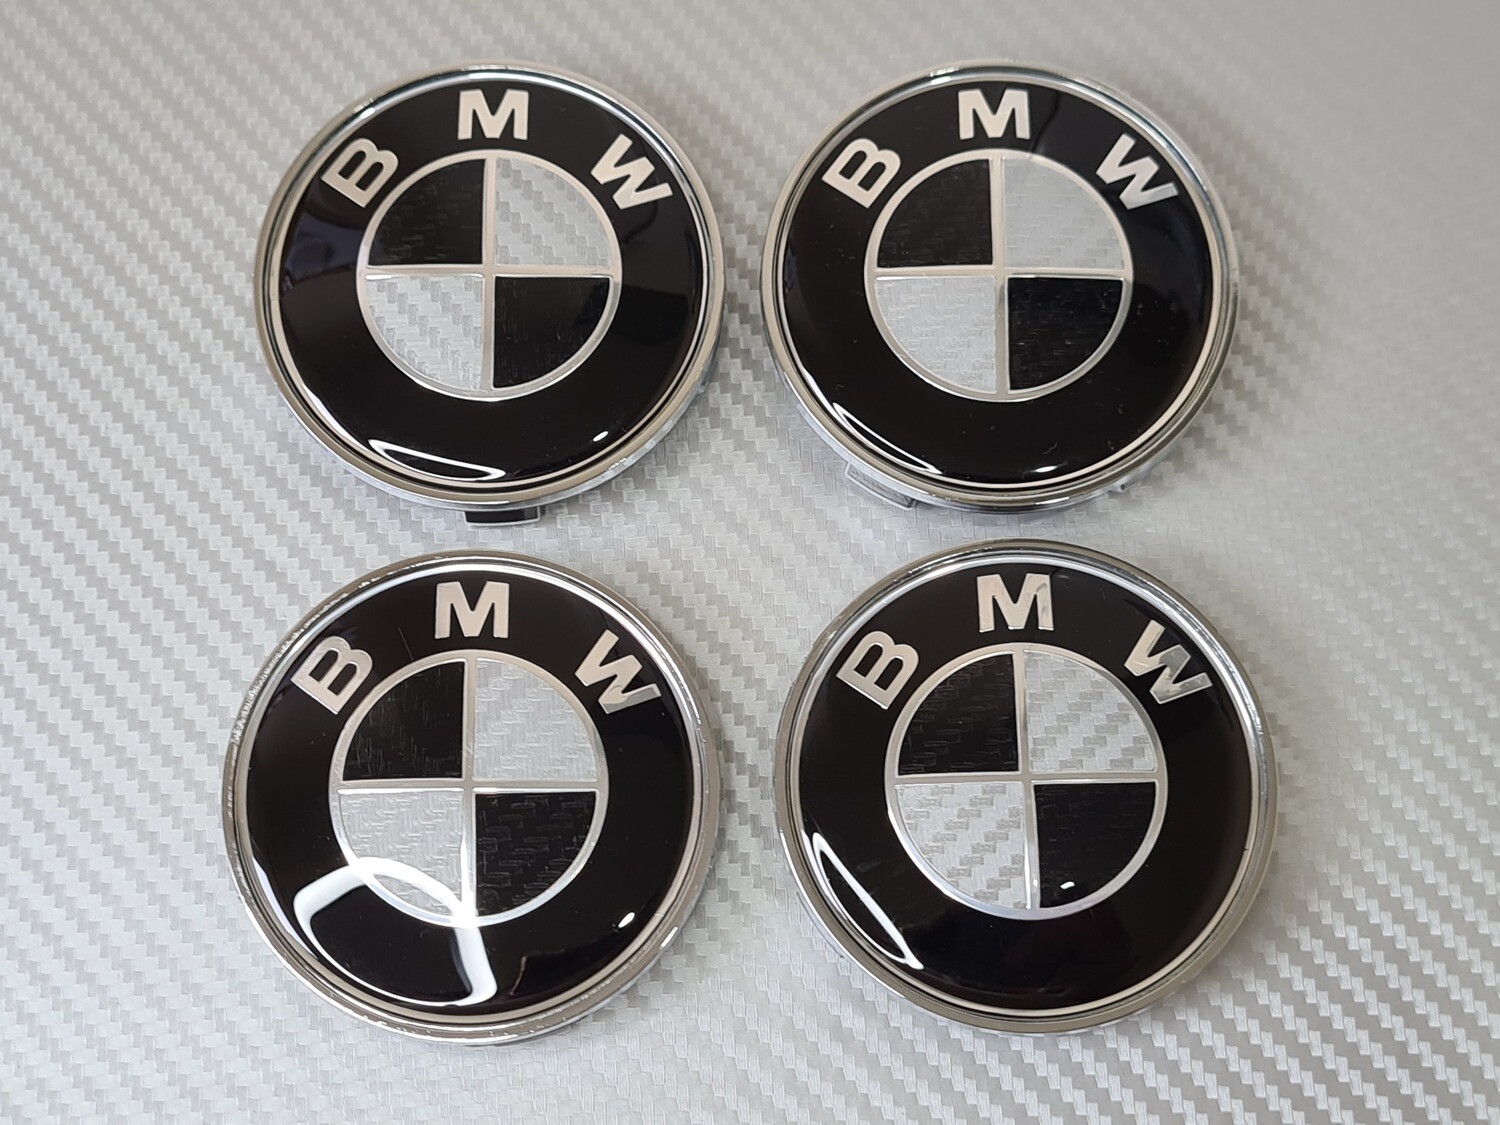 BMW Wheel Centre Caps - Black & White Carbon Fibre